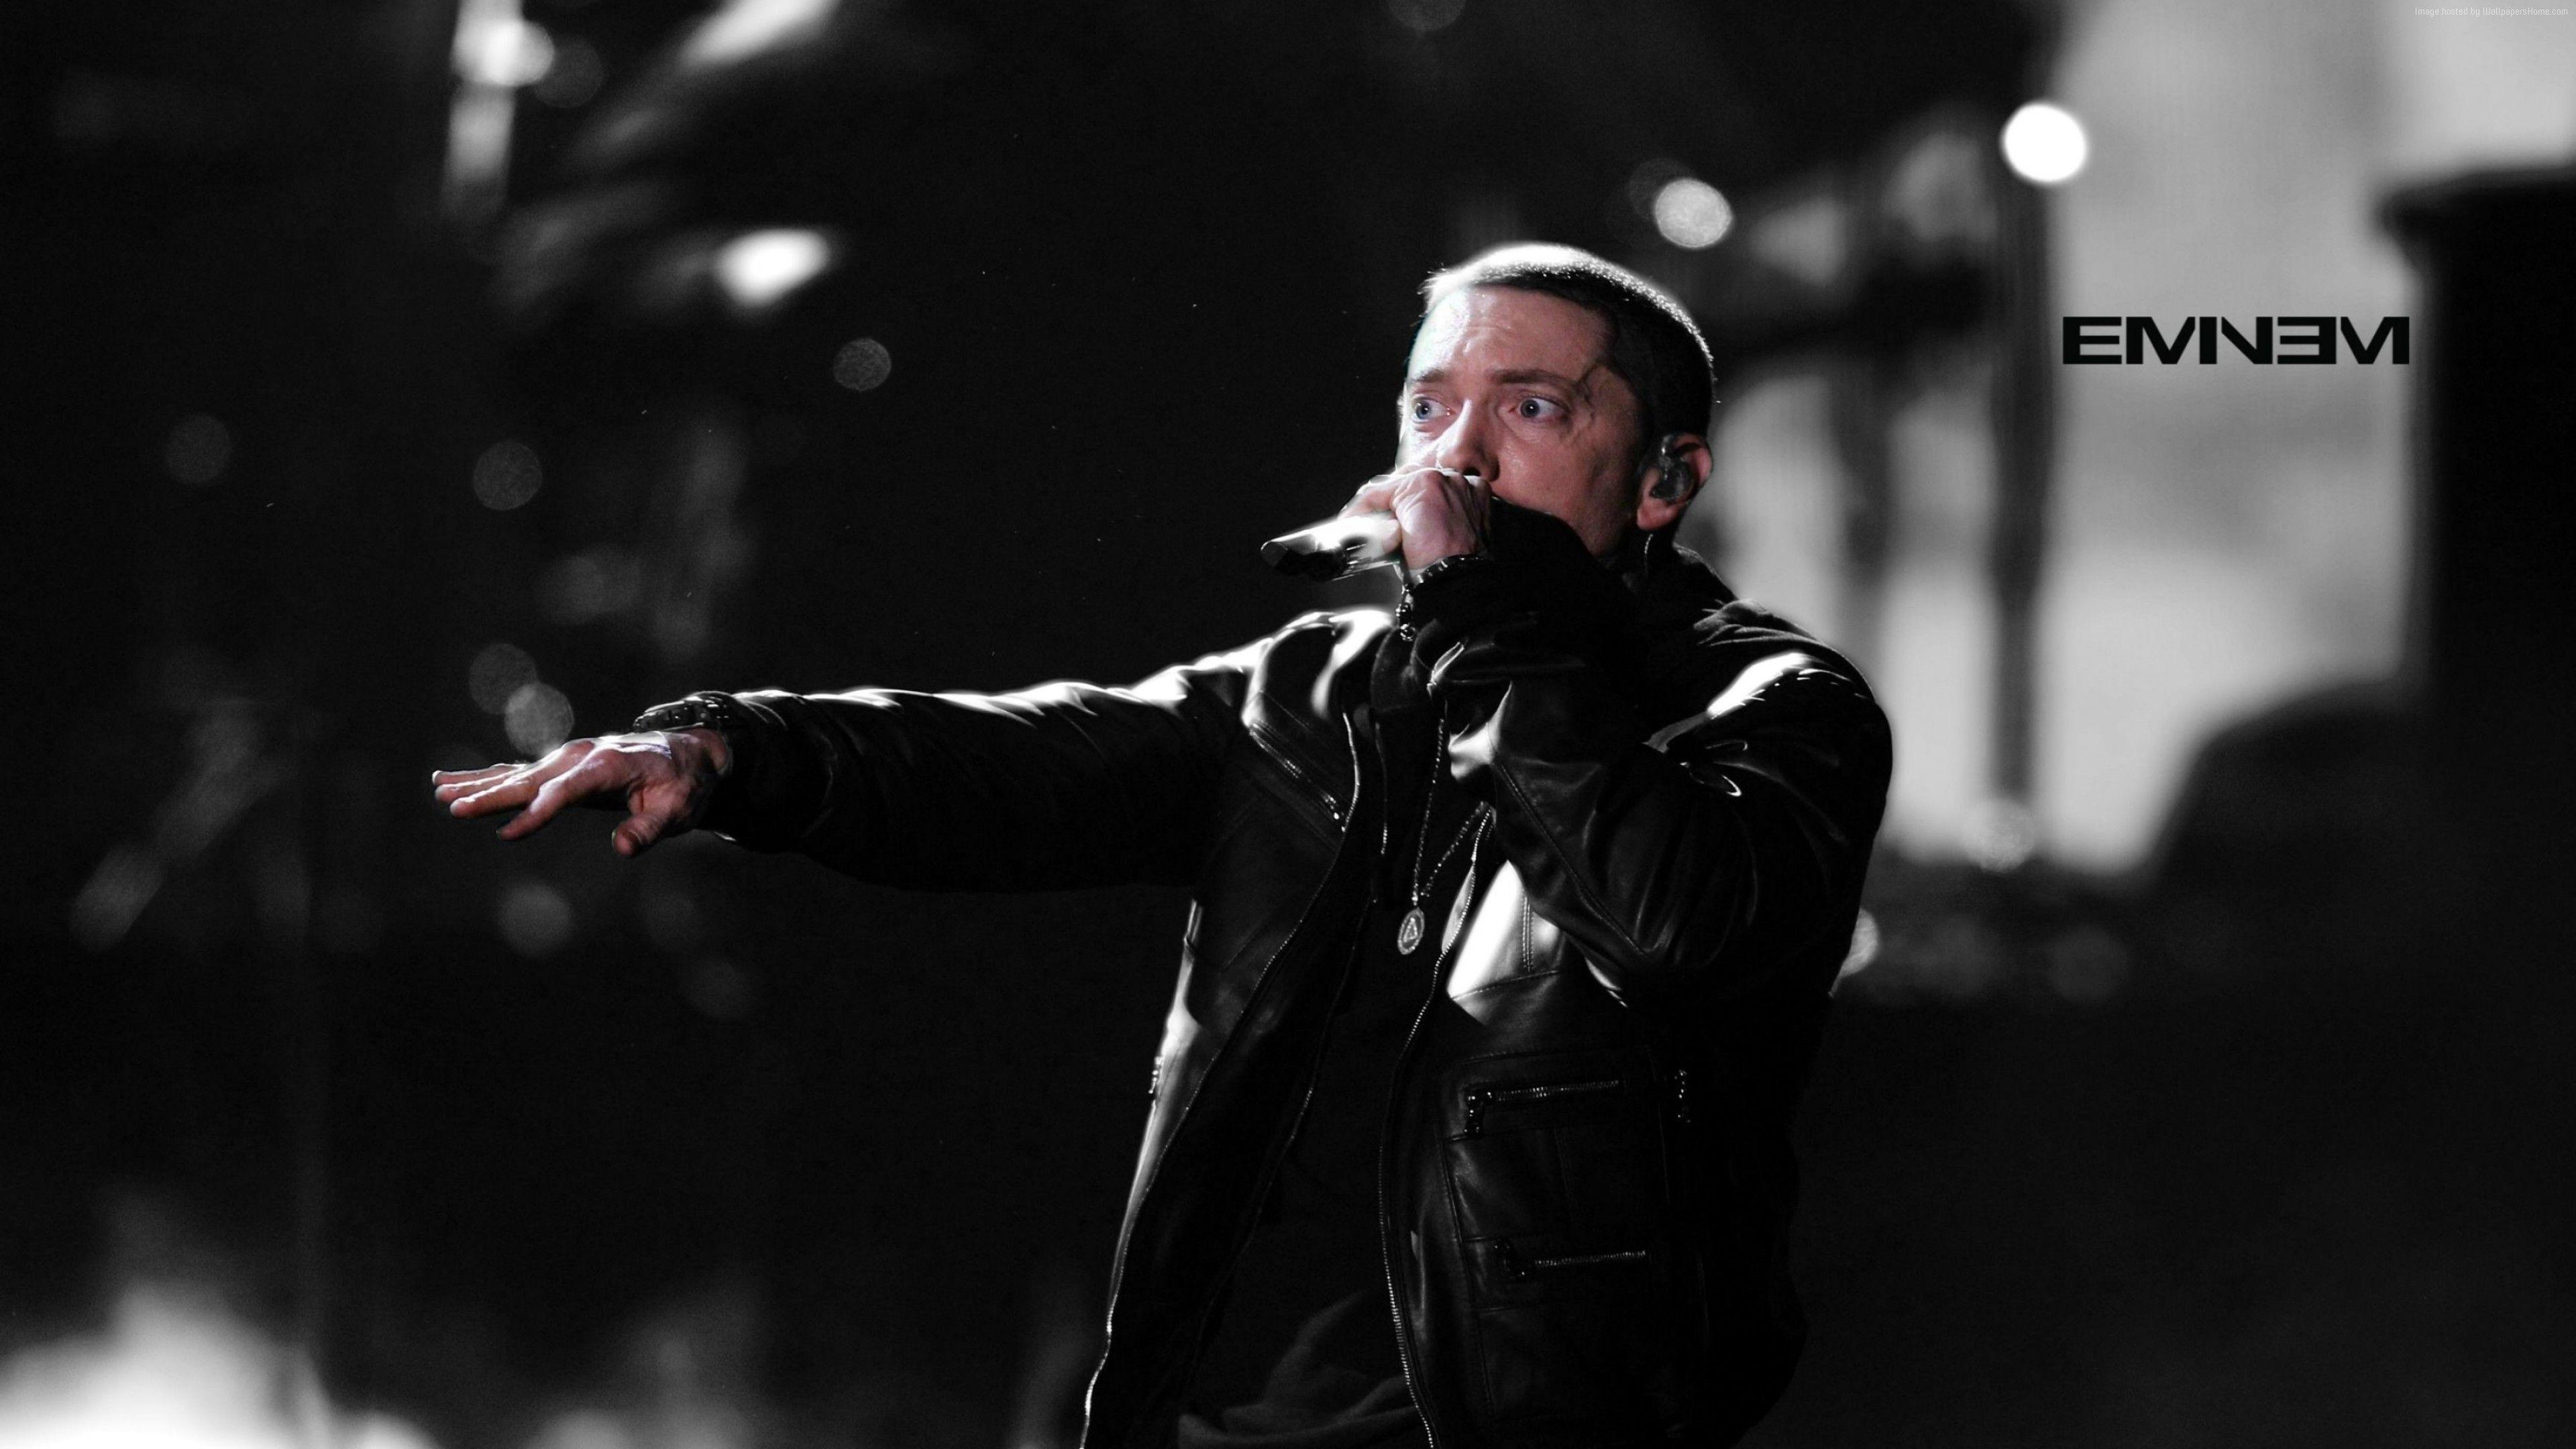 Eminem #actor #rapper #Singer